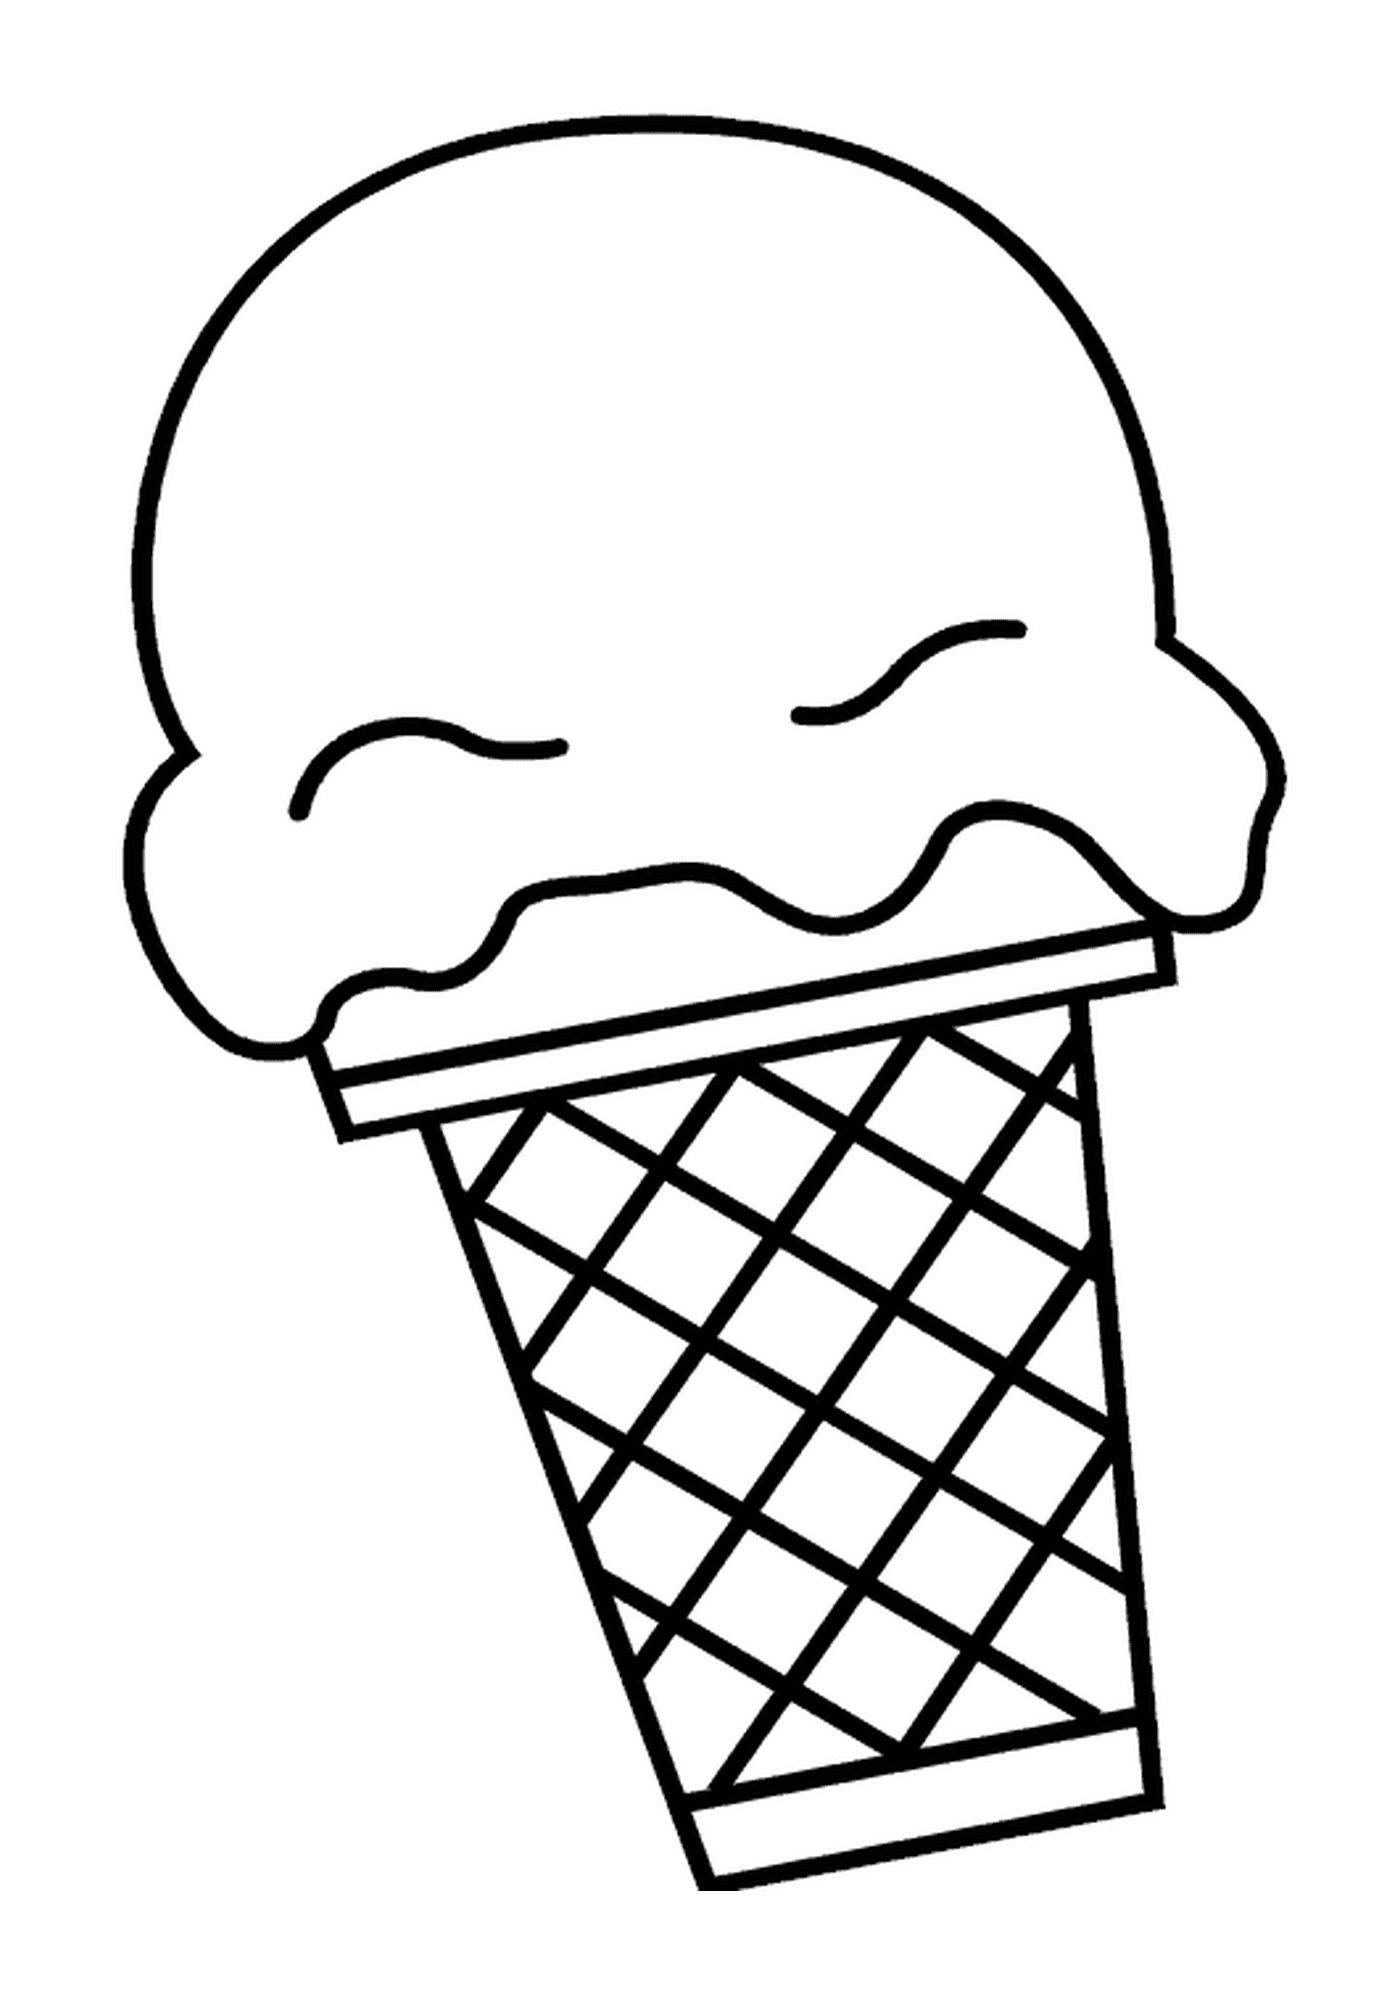  Un cono de helado con un bocado 